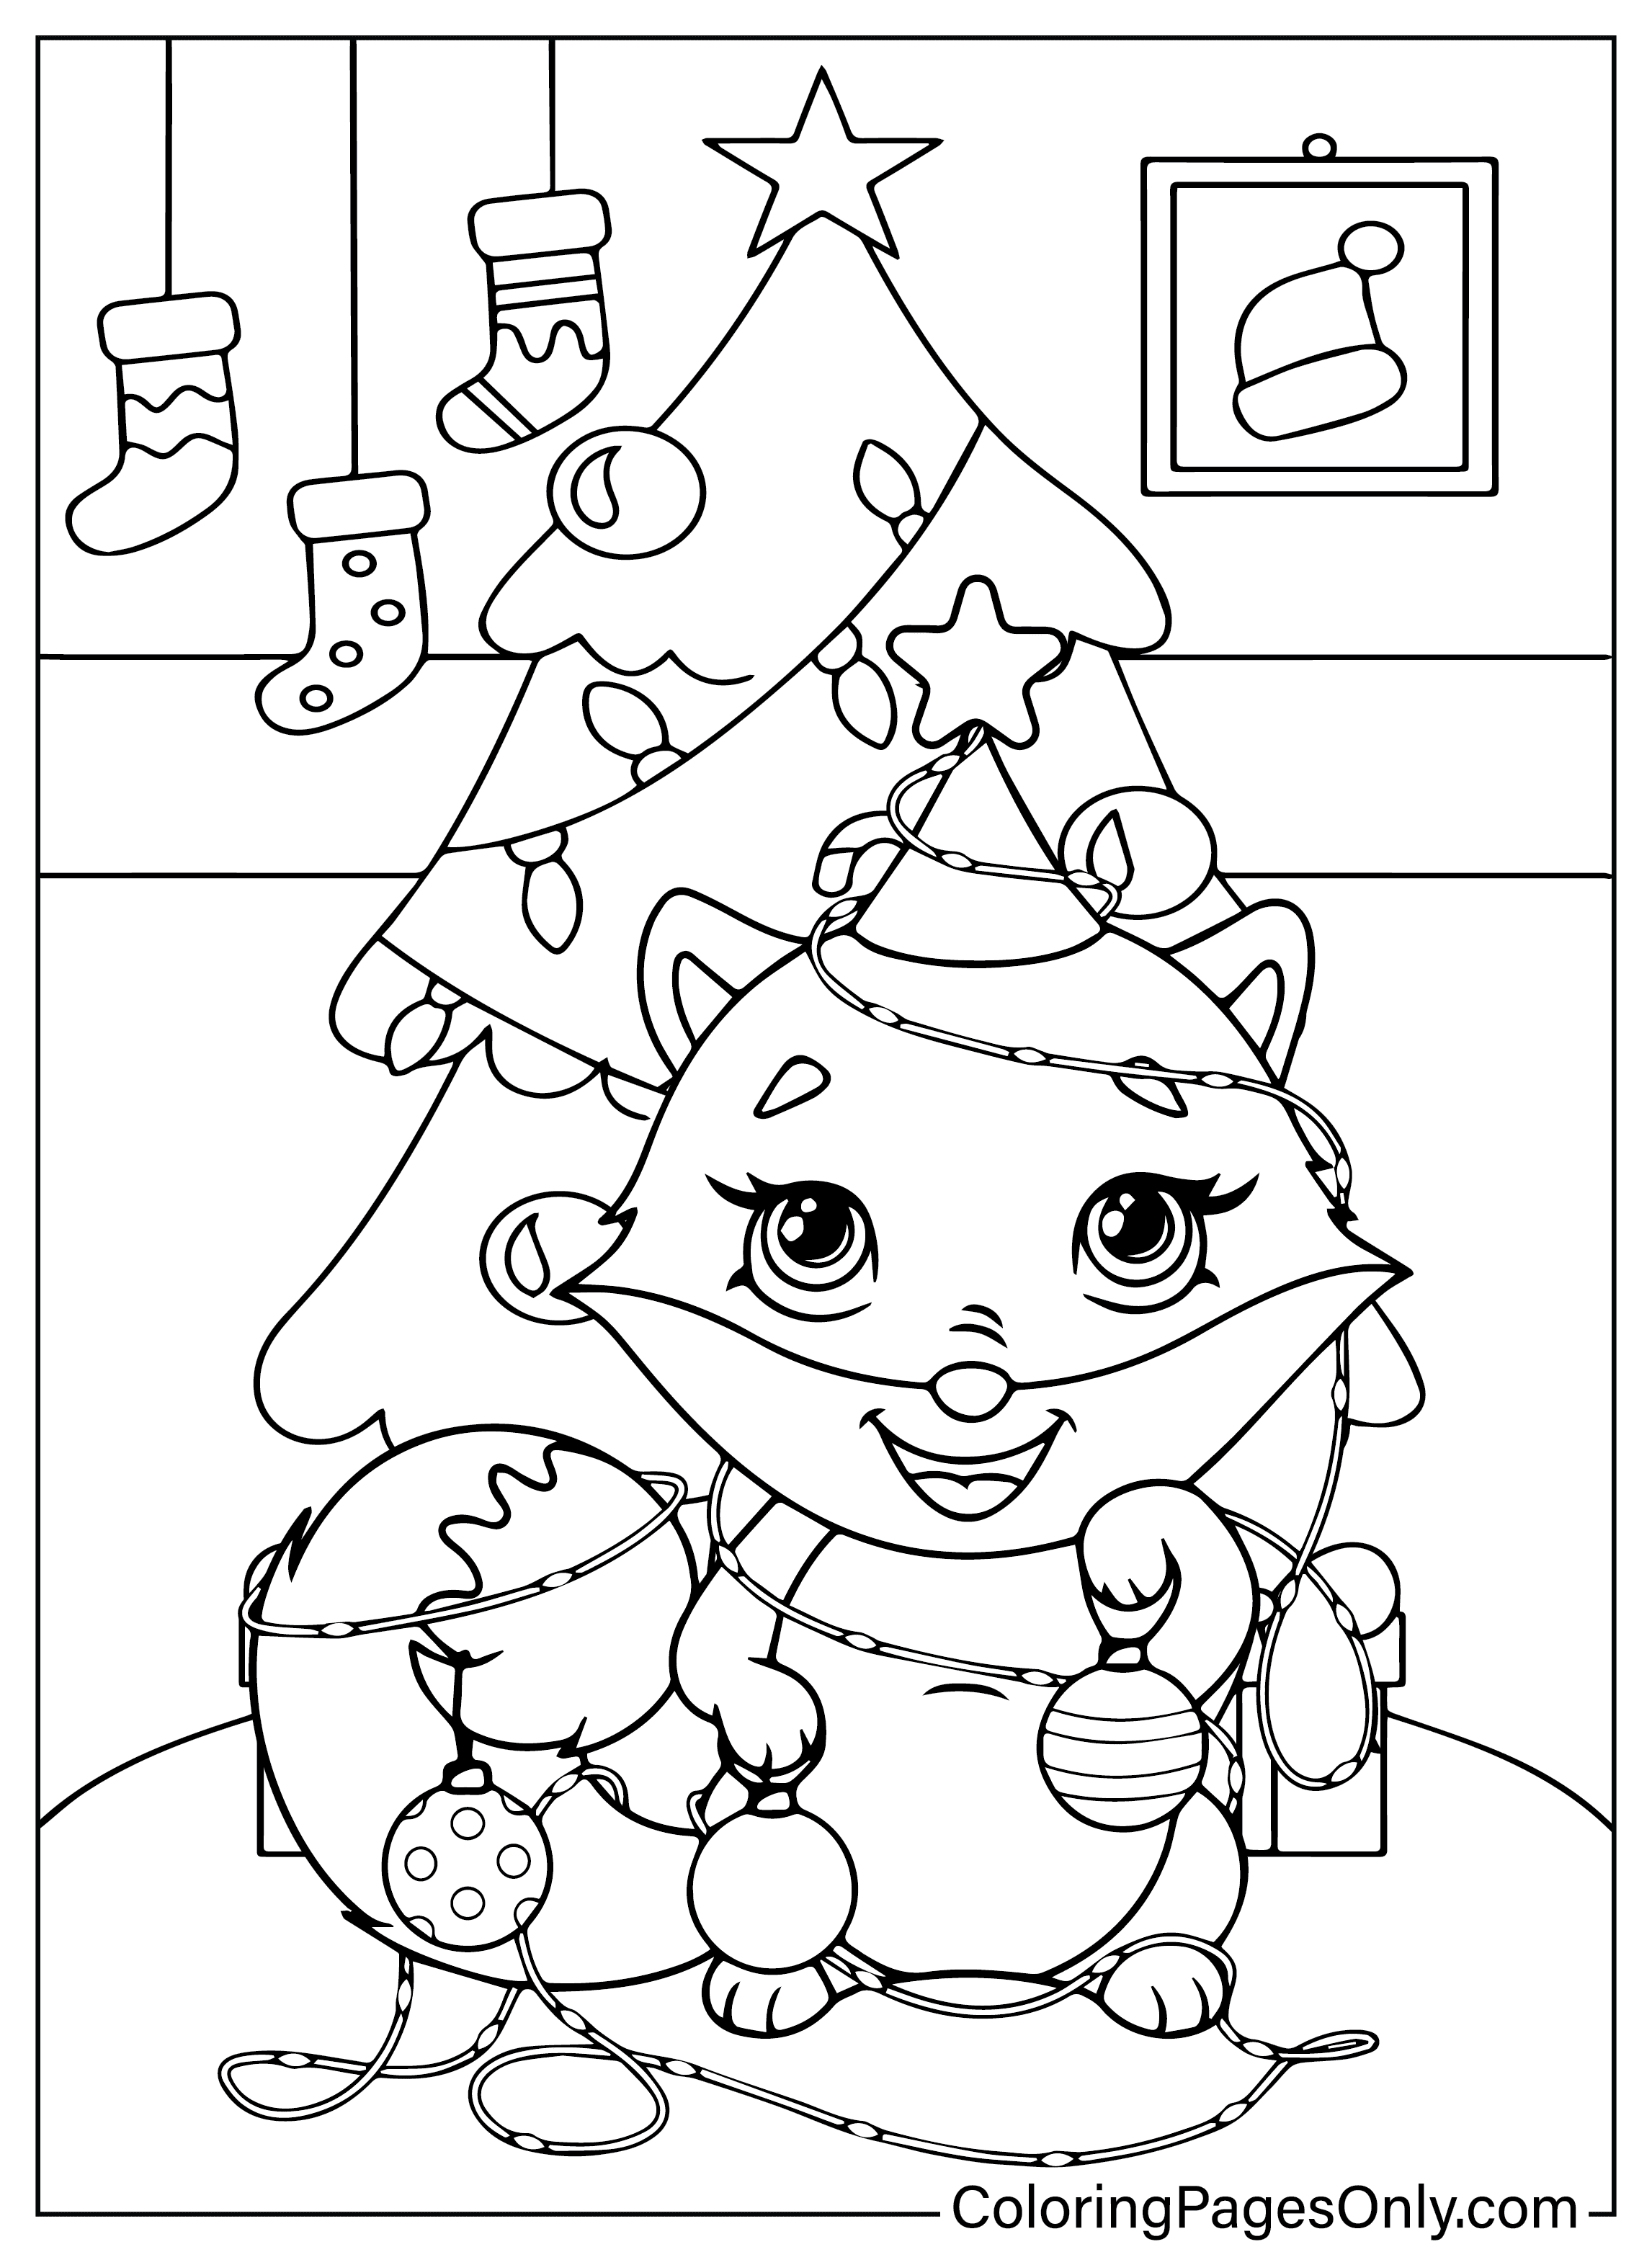 Linda página para colorear de Navidad para imprimir gratis de animales navideños